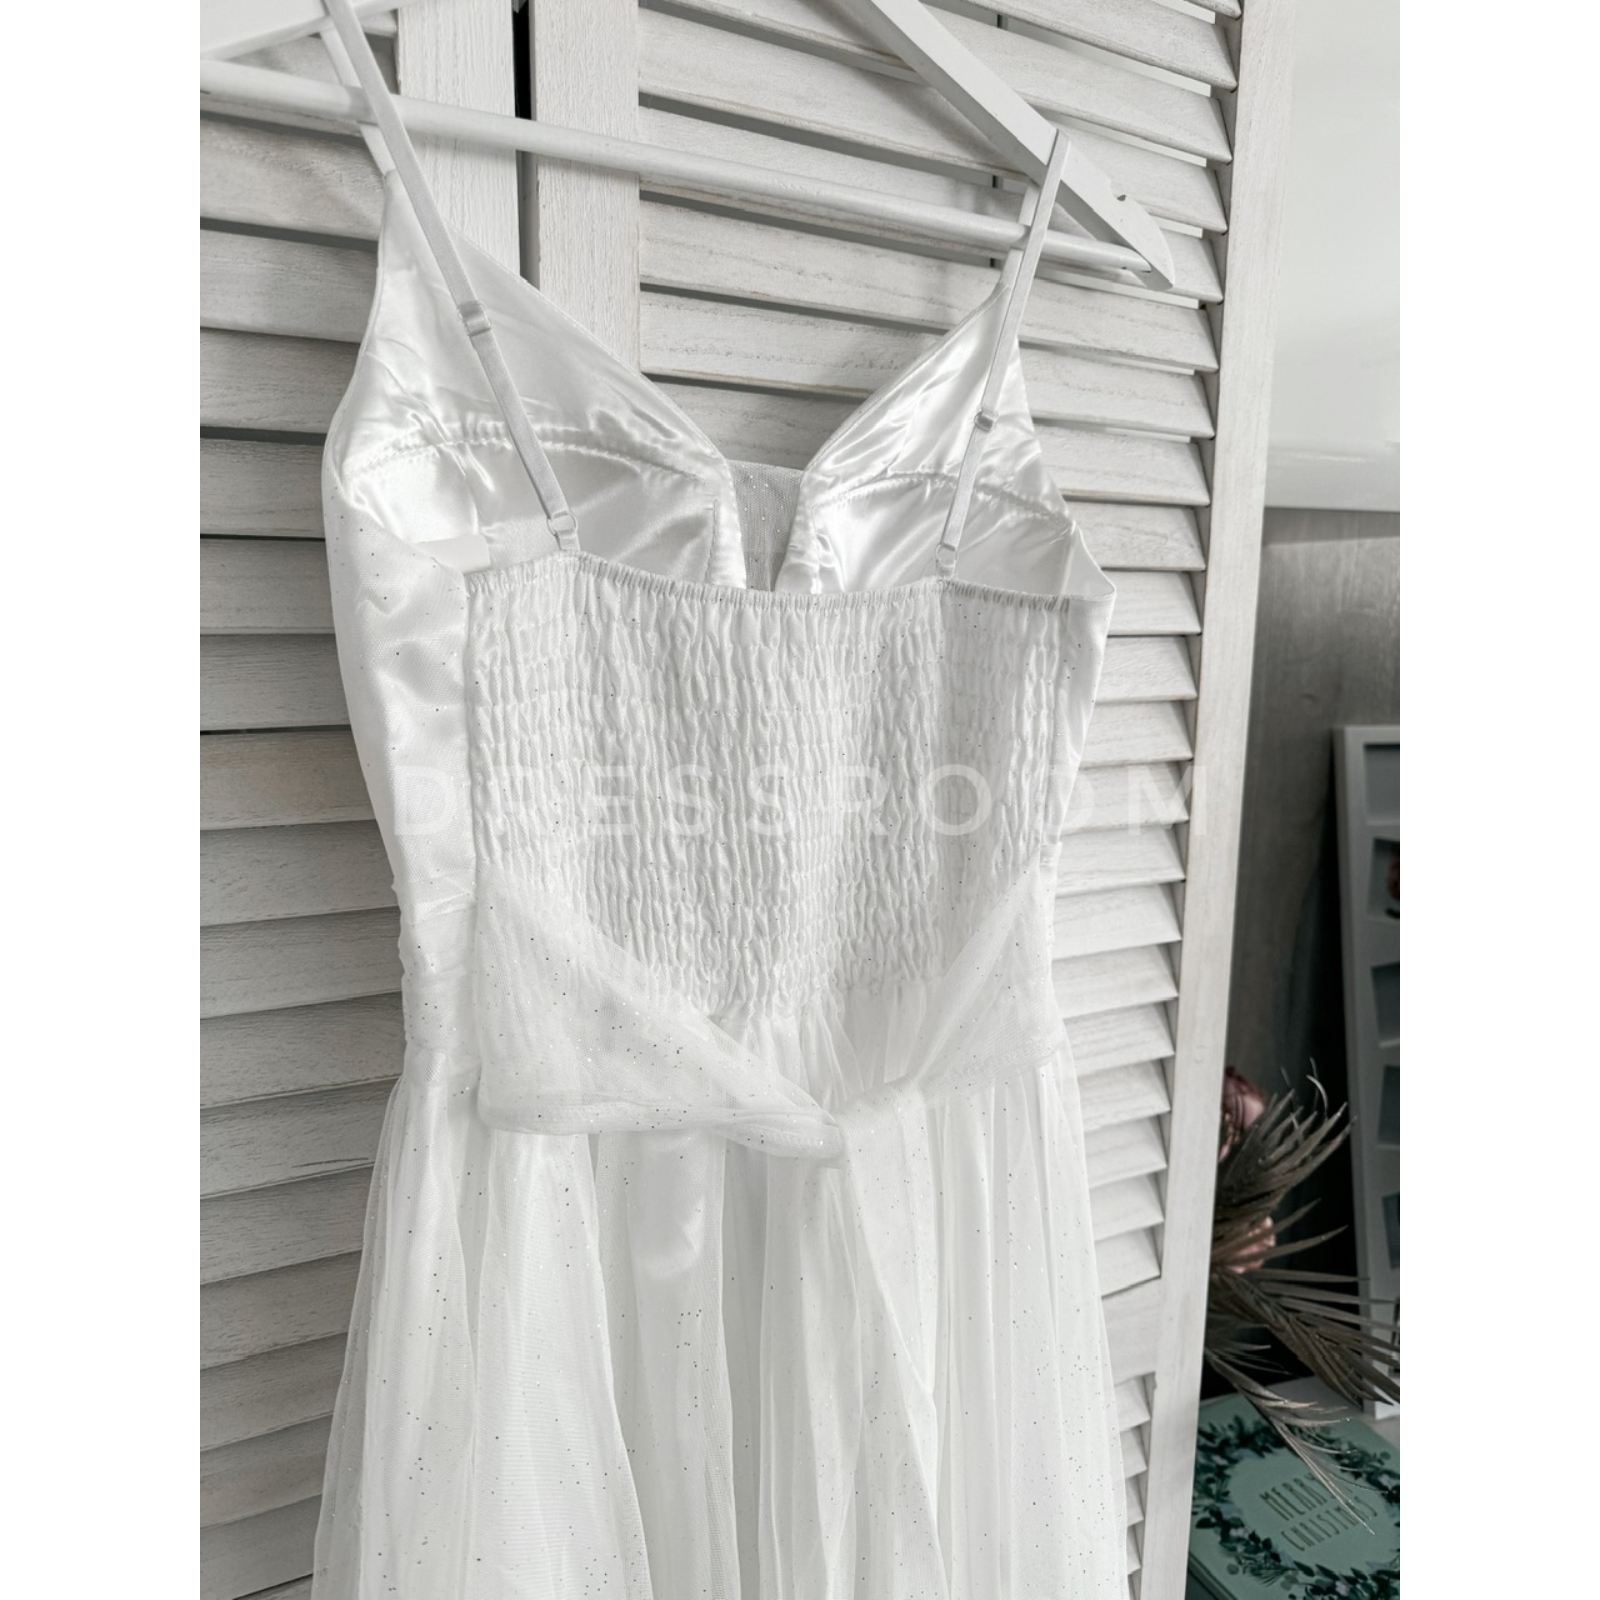 Kép 3/3 - LUXORY csillámos ruha - Fehér -Menyecske ruha